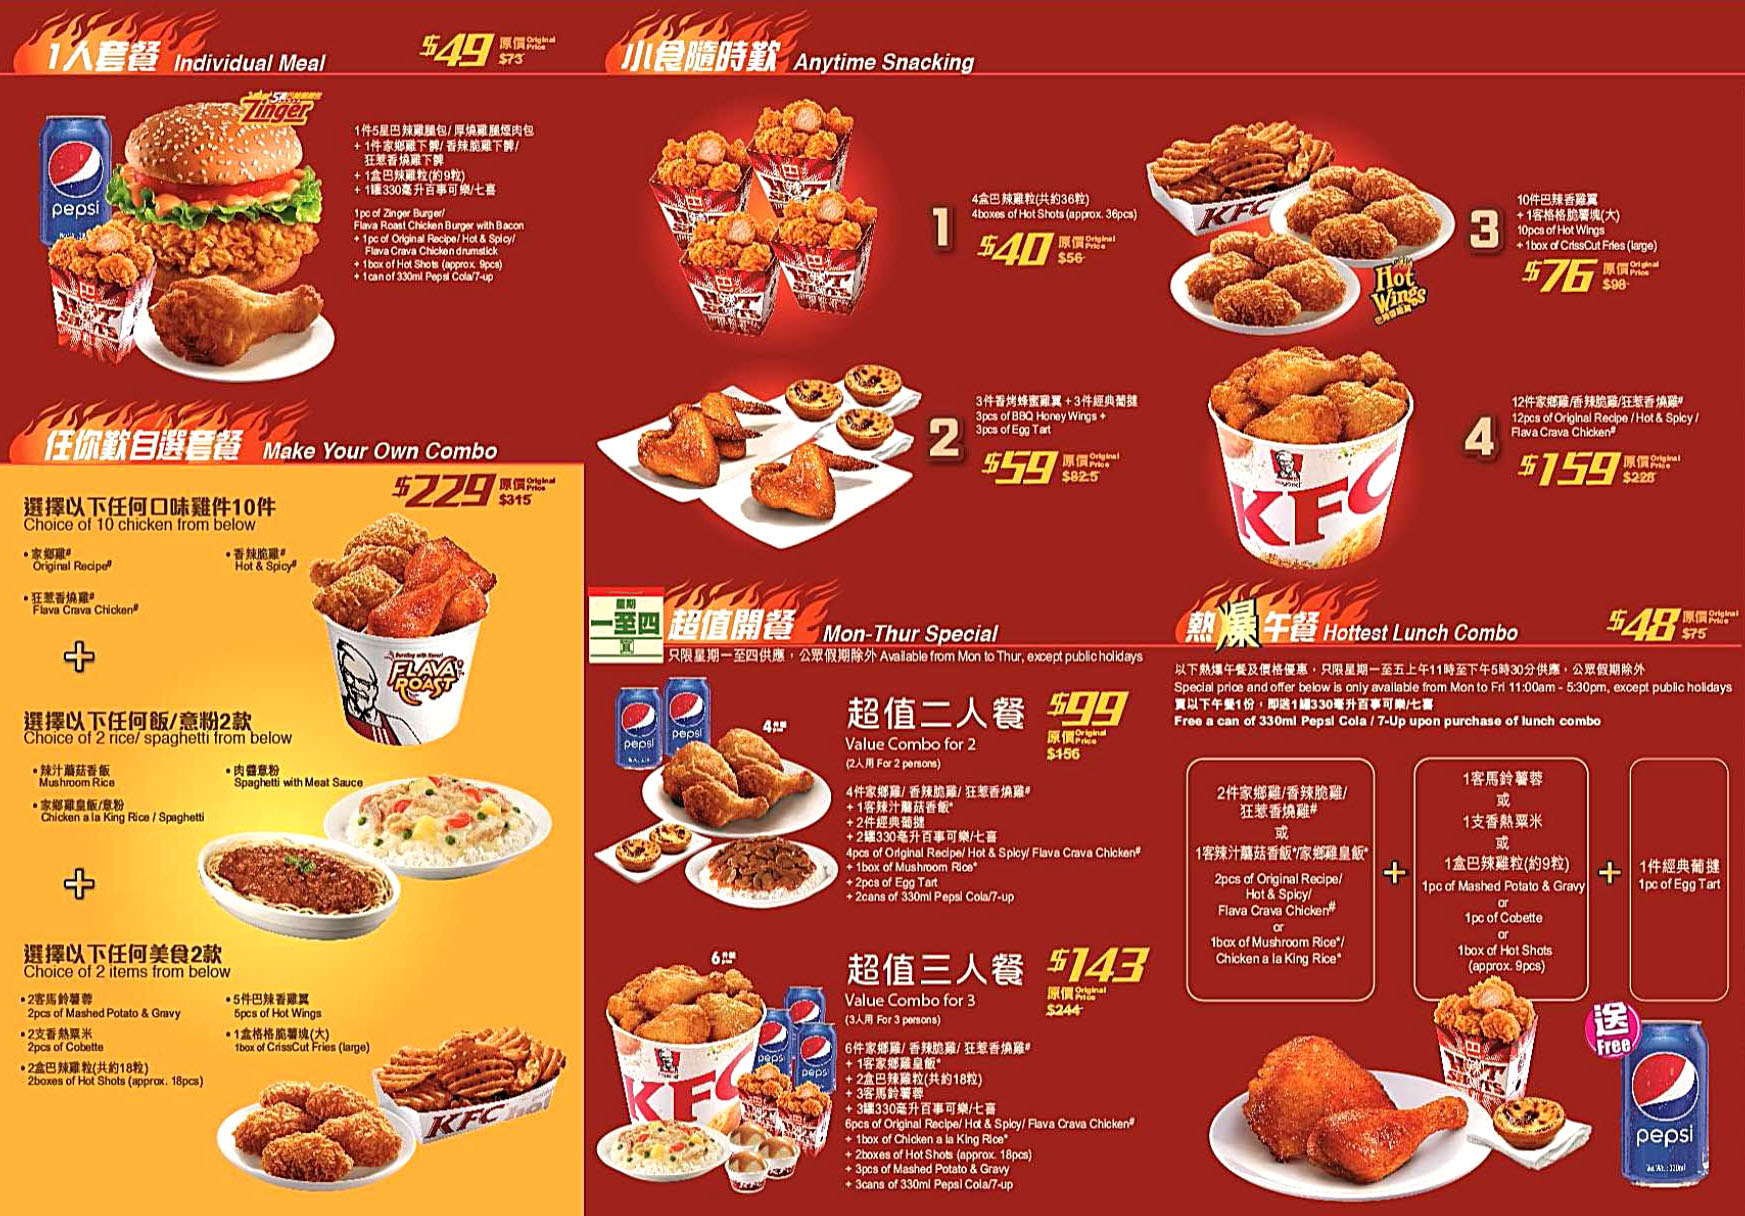 香港肯德基家鄉雞餐廳 KFC hk delivery online coupons 外賣速遞服務美食套餐價格餐單餐牌餐飲劵價目表